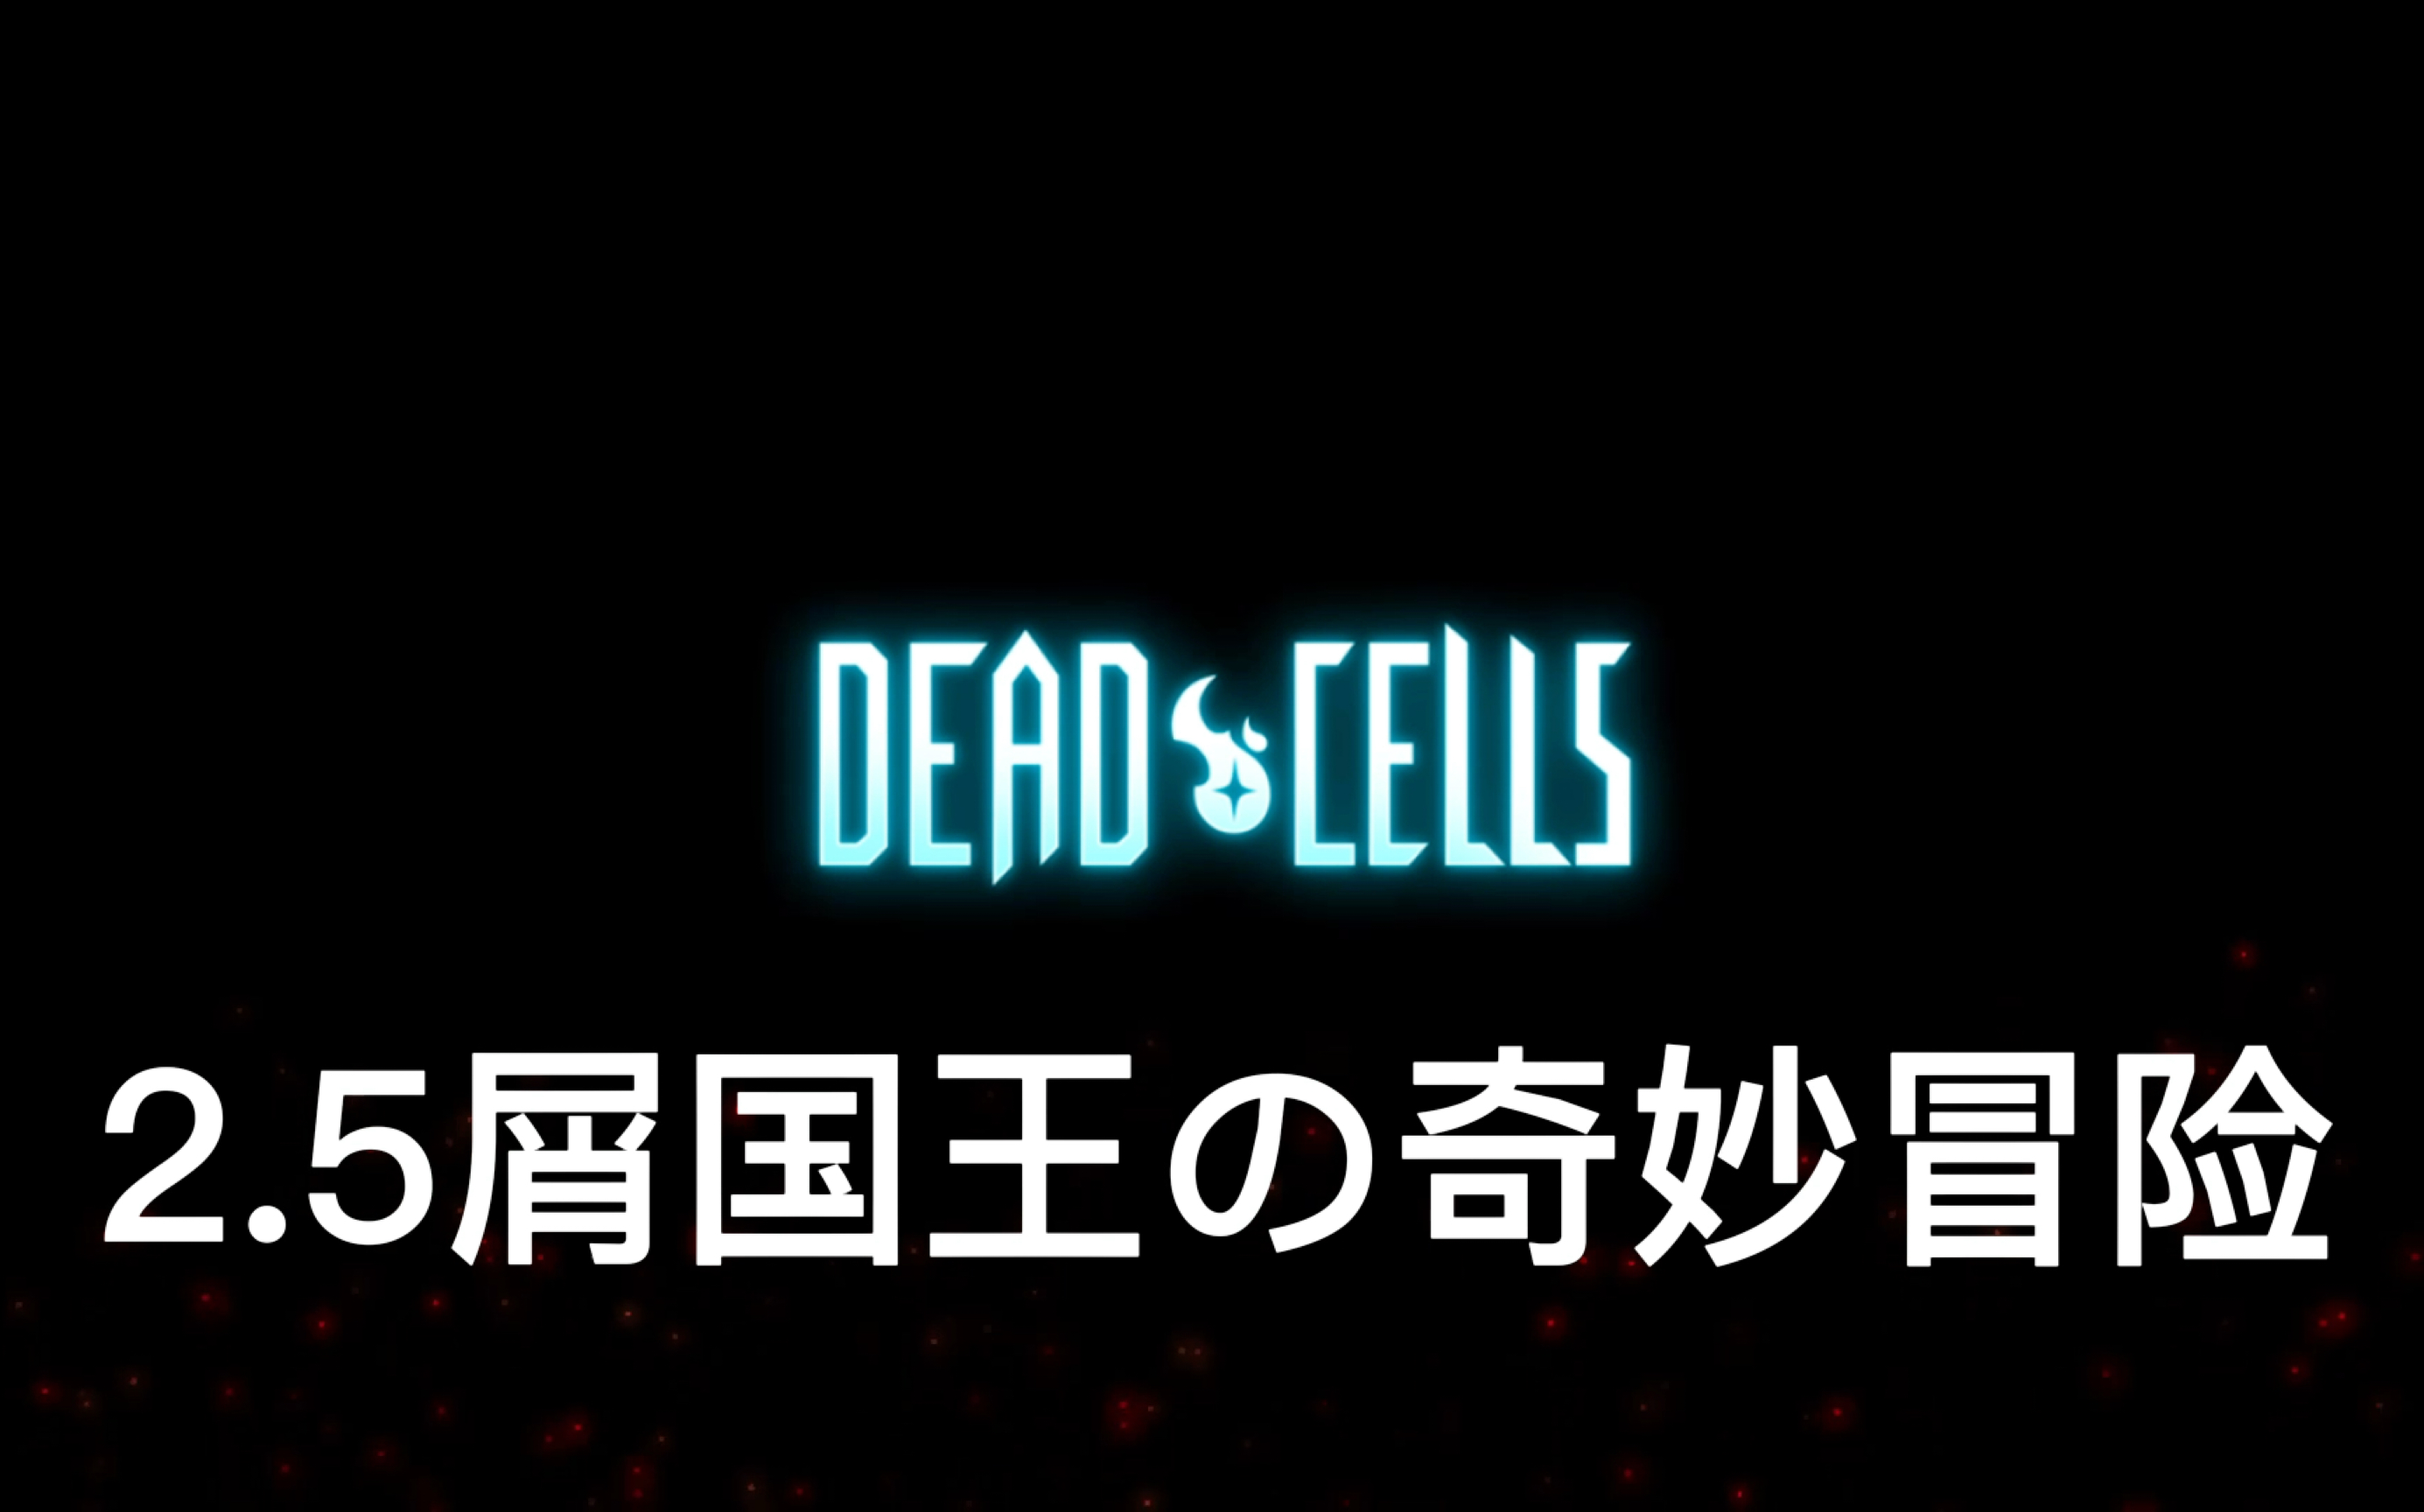 主播玩死亡细胞手机版游戏_细胞死亡模式图_死亡细胞解说视频